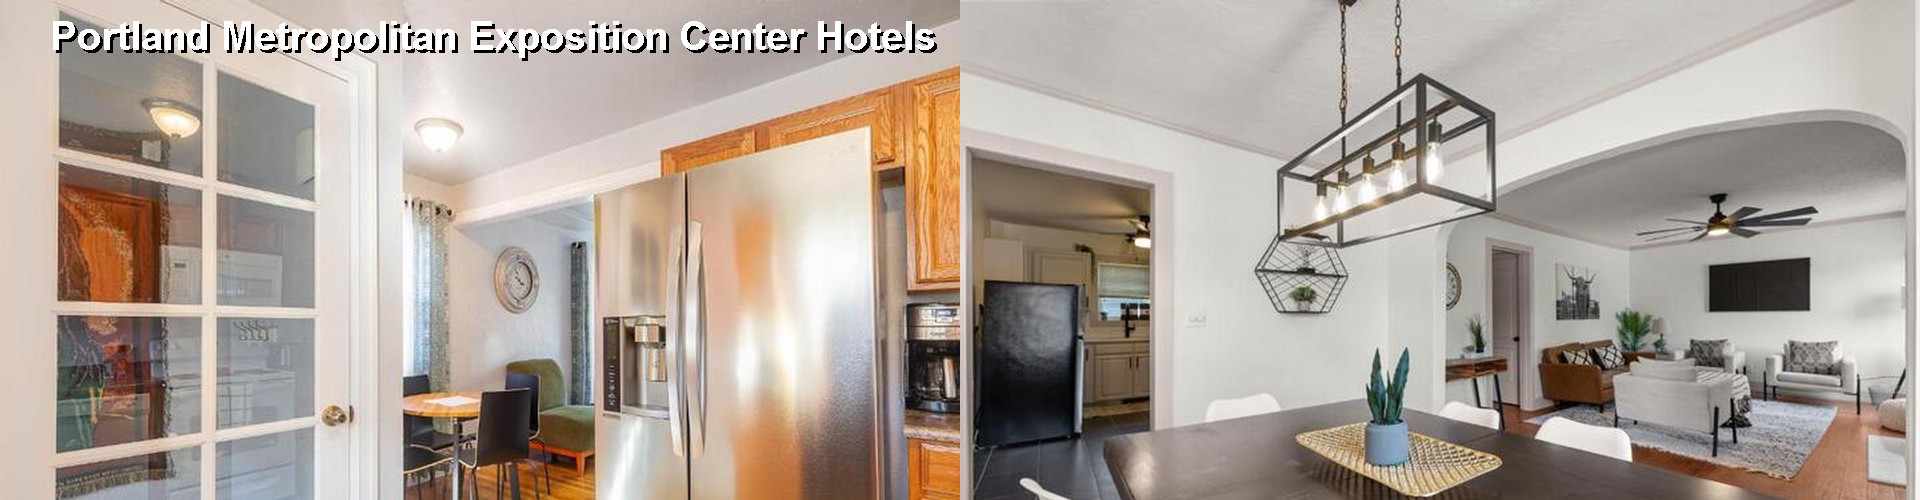 5 Best Hotels near Portland Metropolitan Exposition Center